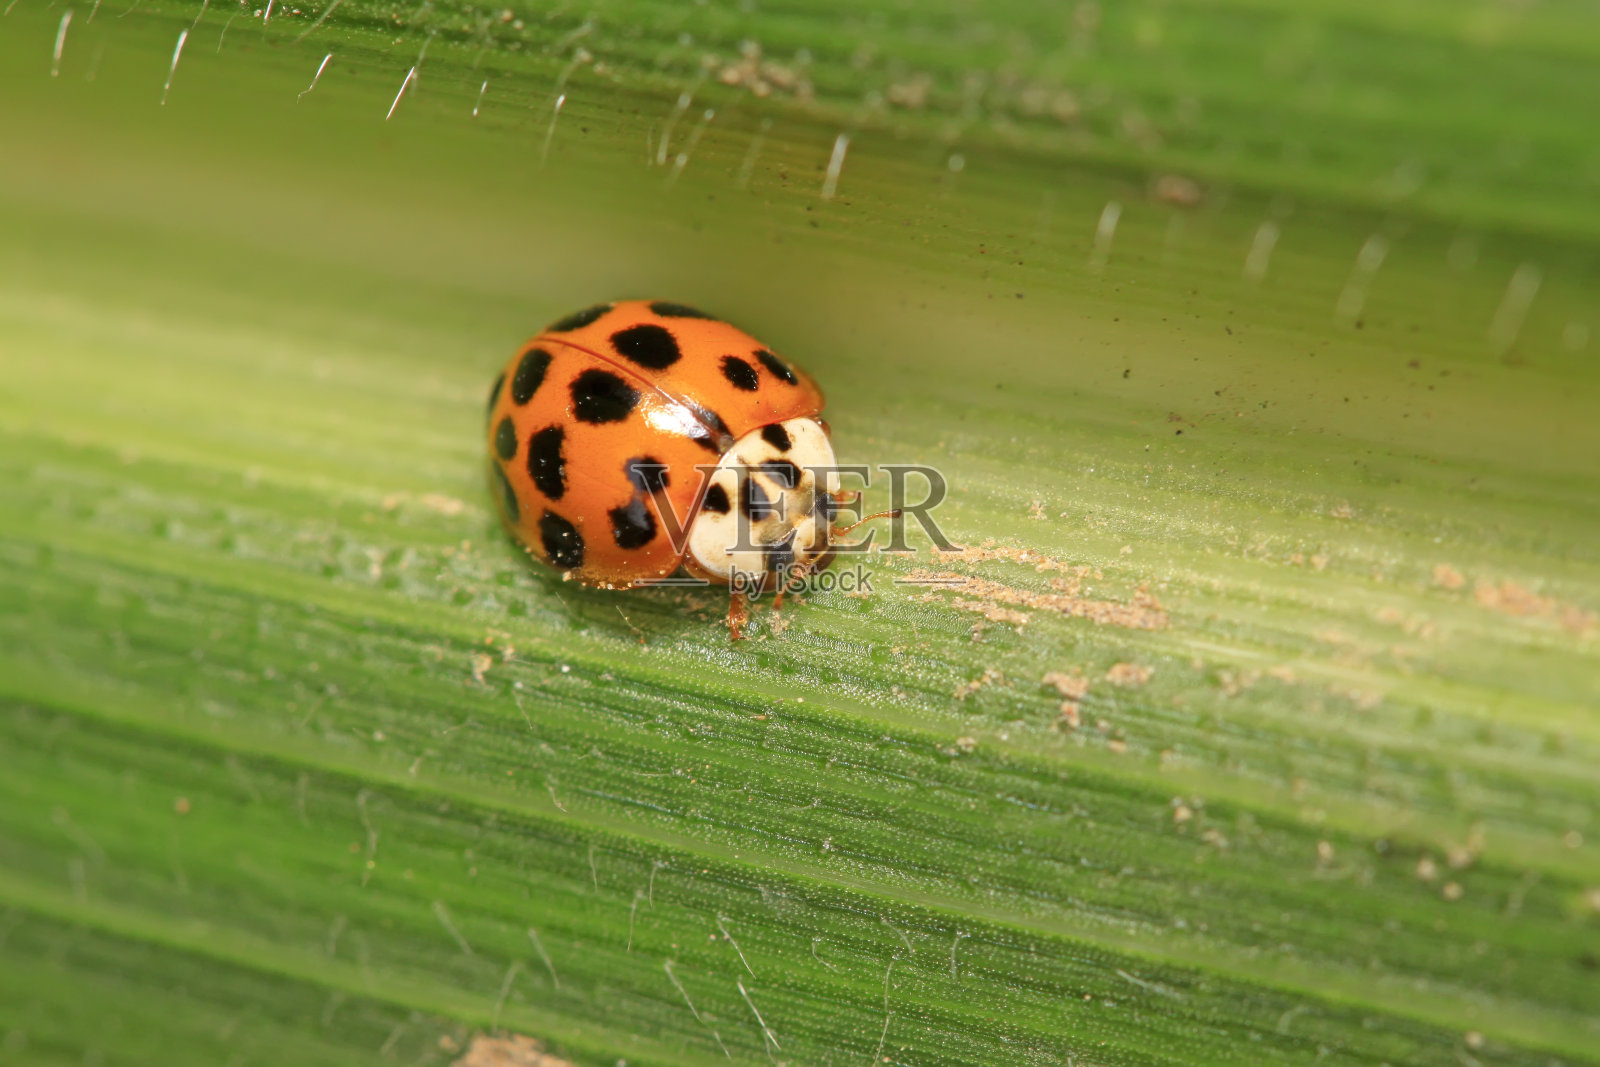 异色瓢虫在野生植物上的应用照片摄影图片